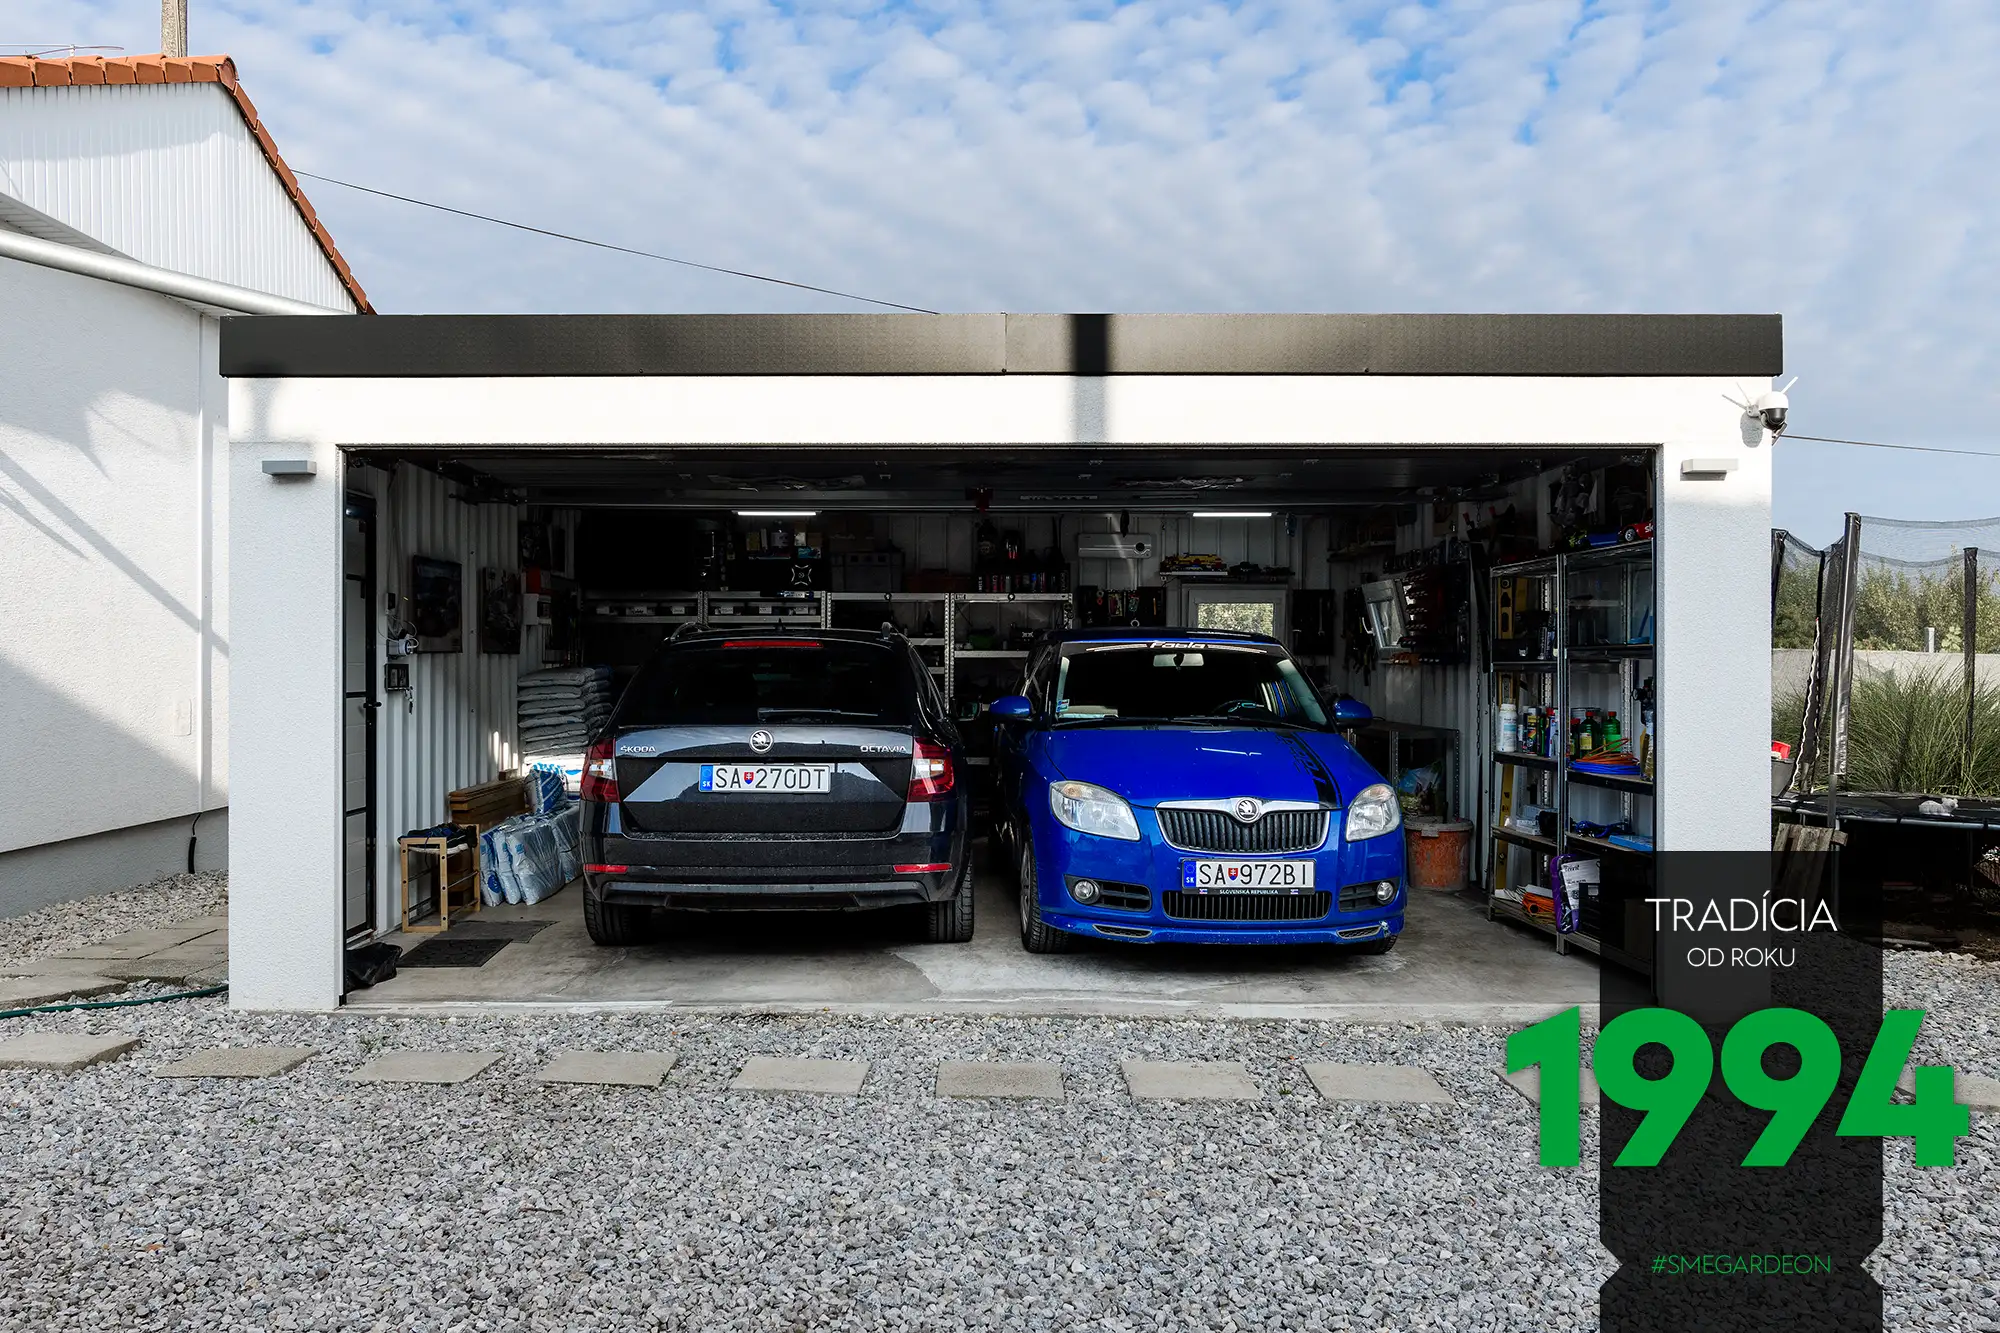 Der Einblick in eine ungedämmte Garage mit 2 geparkten Autos